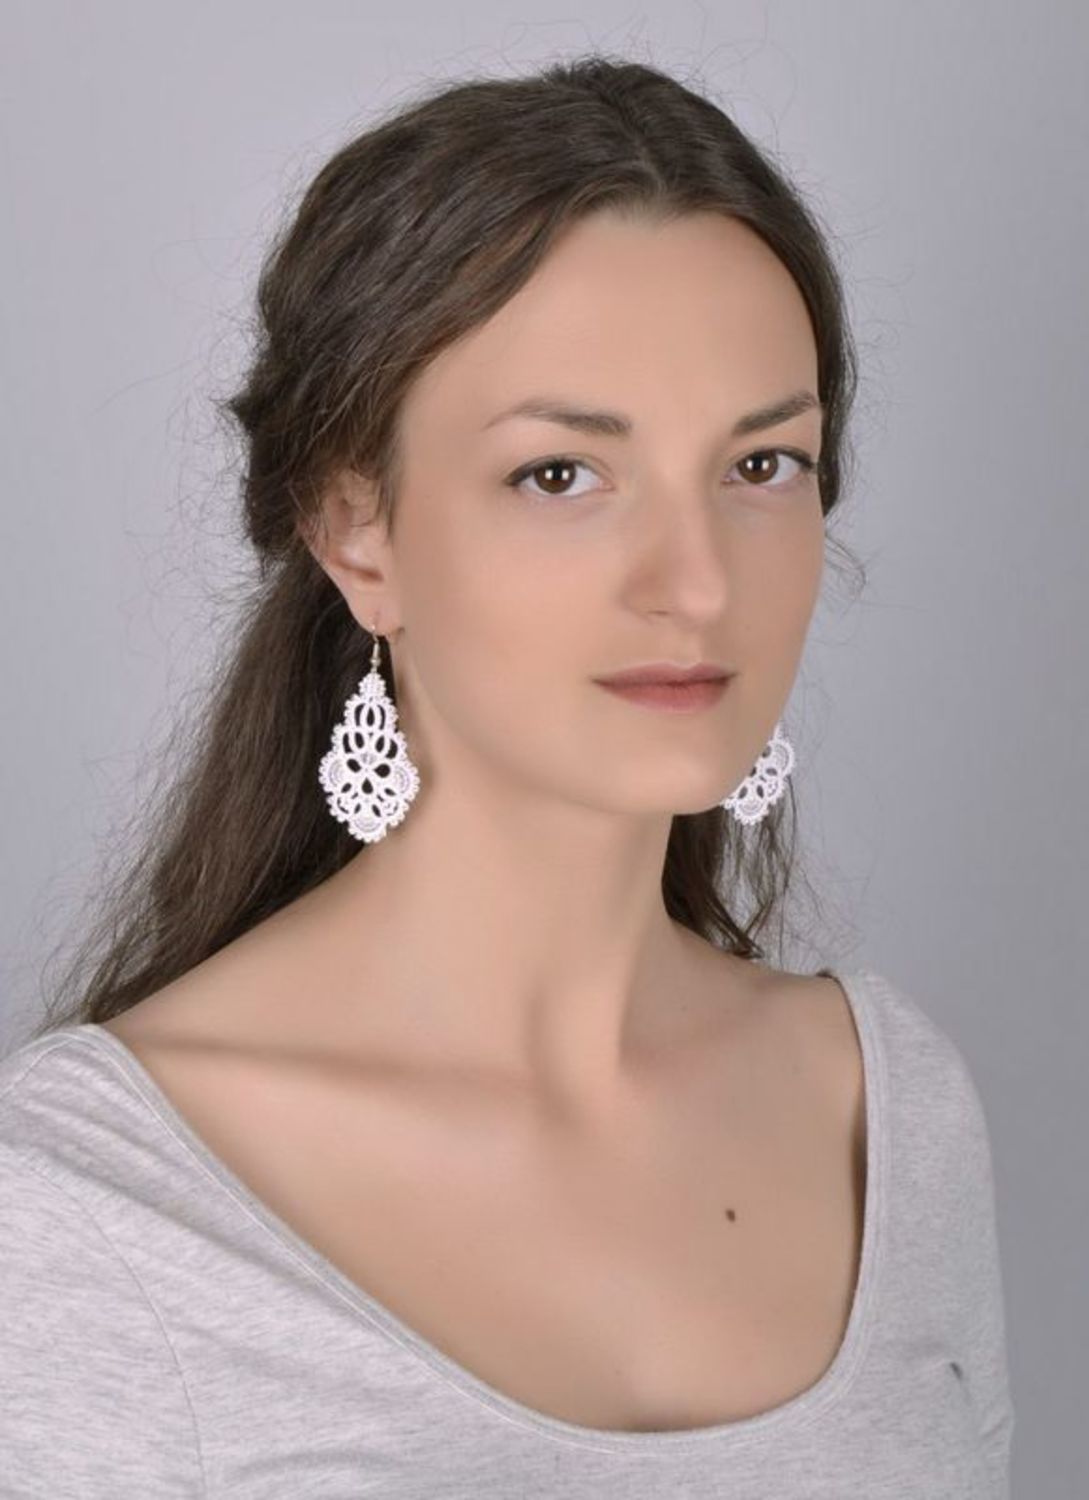 Lace earrings photo 5